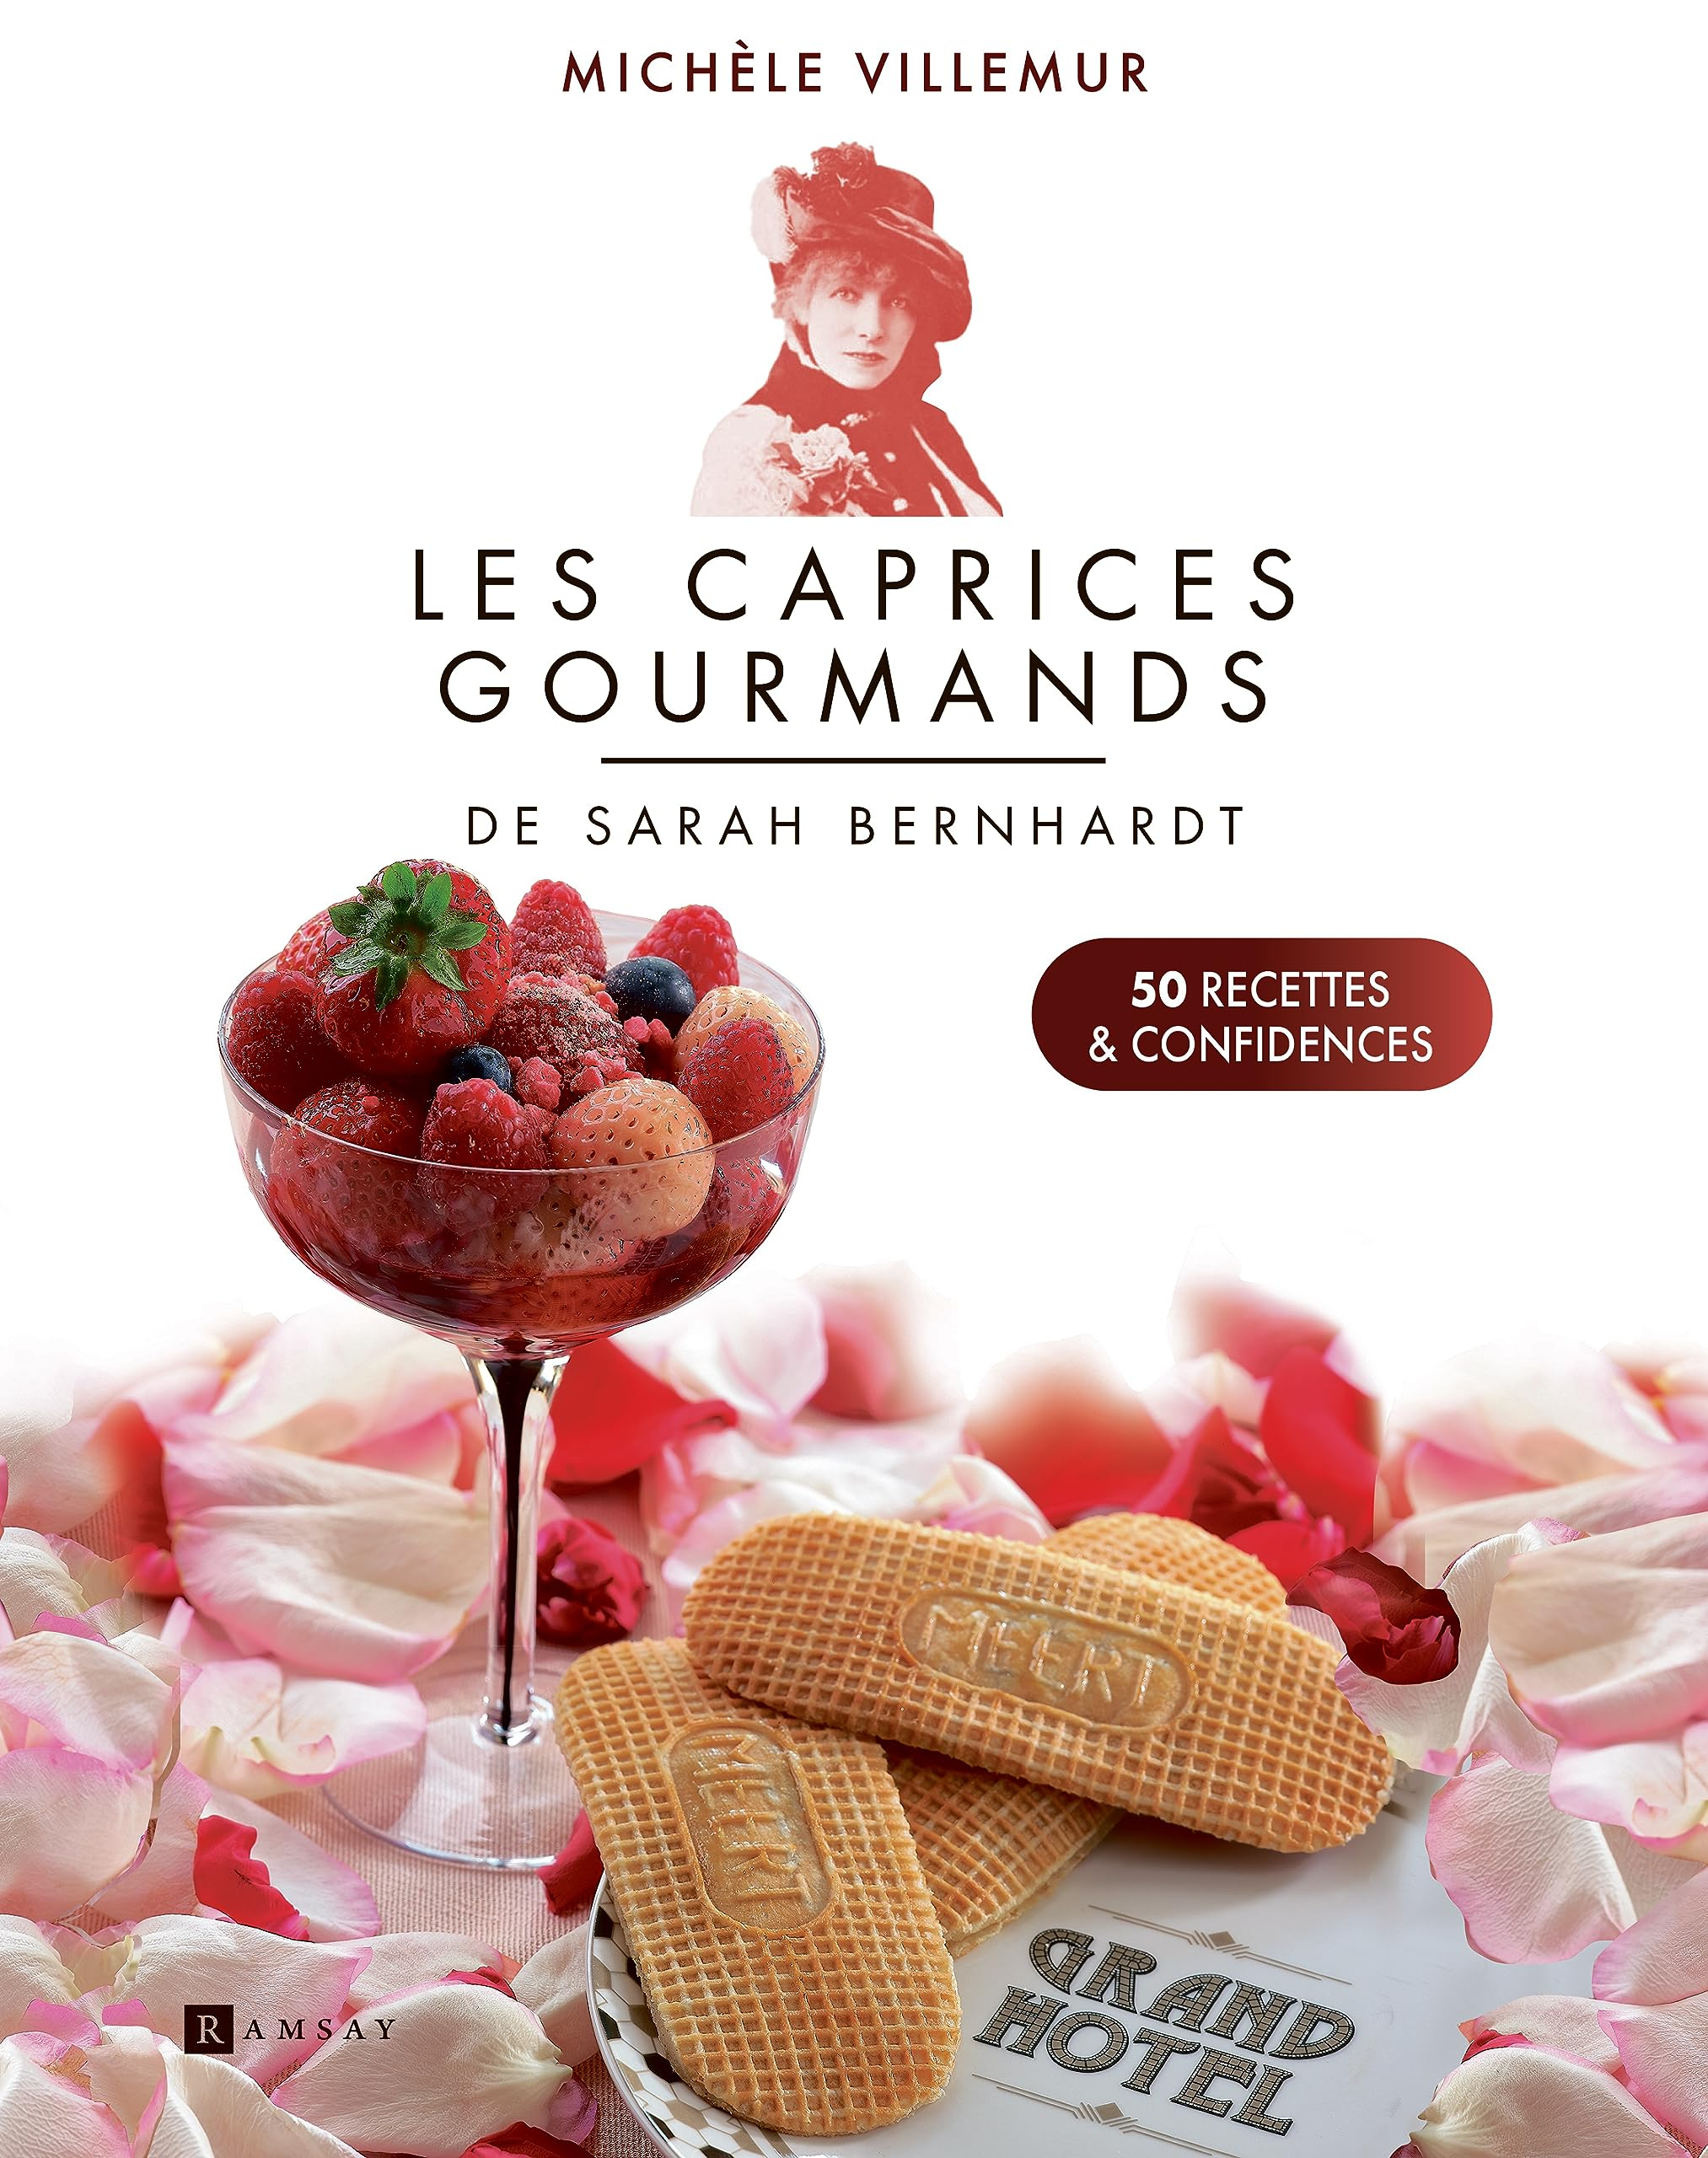 Les caprices gourmands de Sarah Bernhardt : 50 recettes & confidences